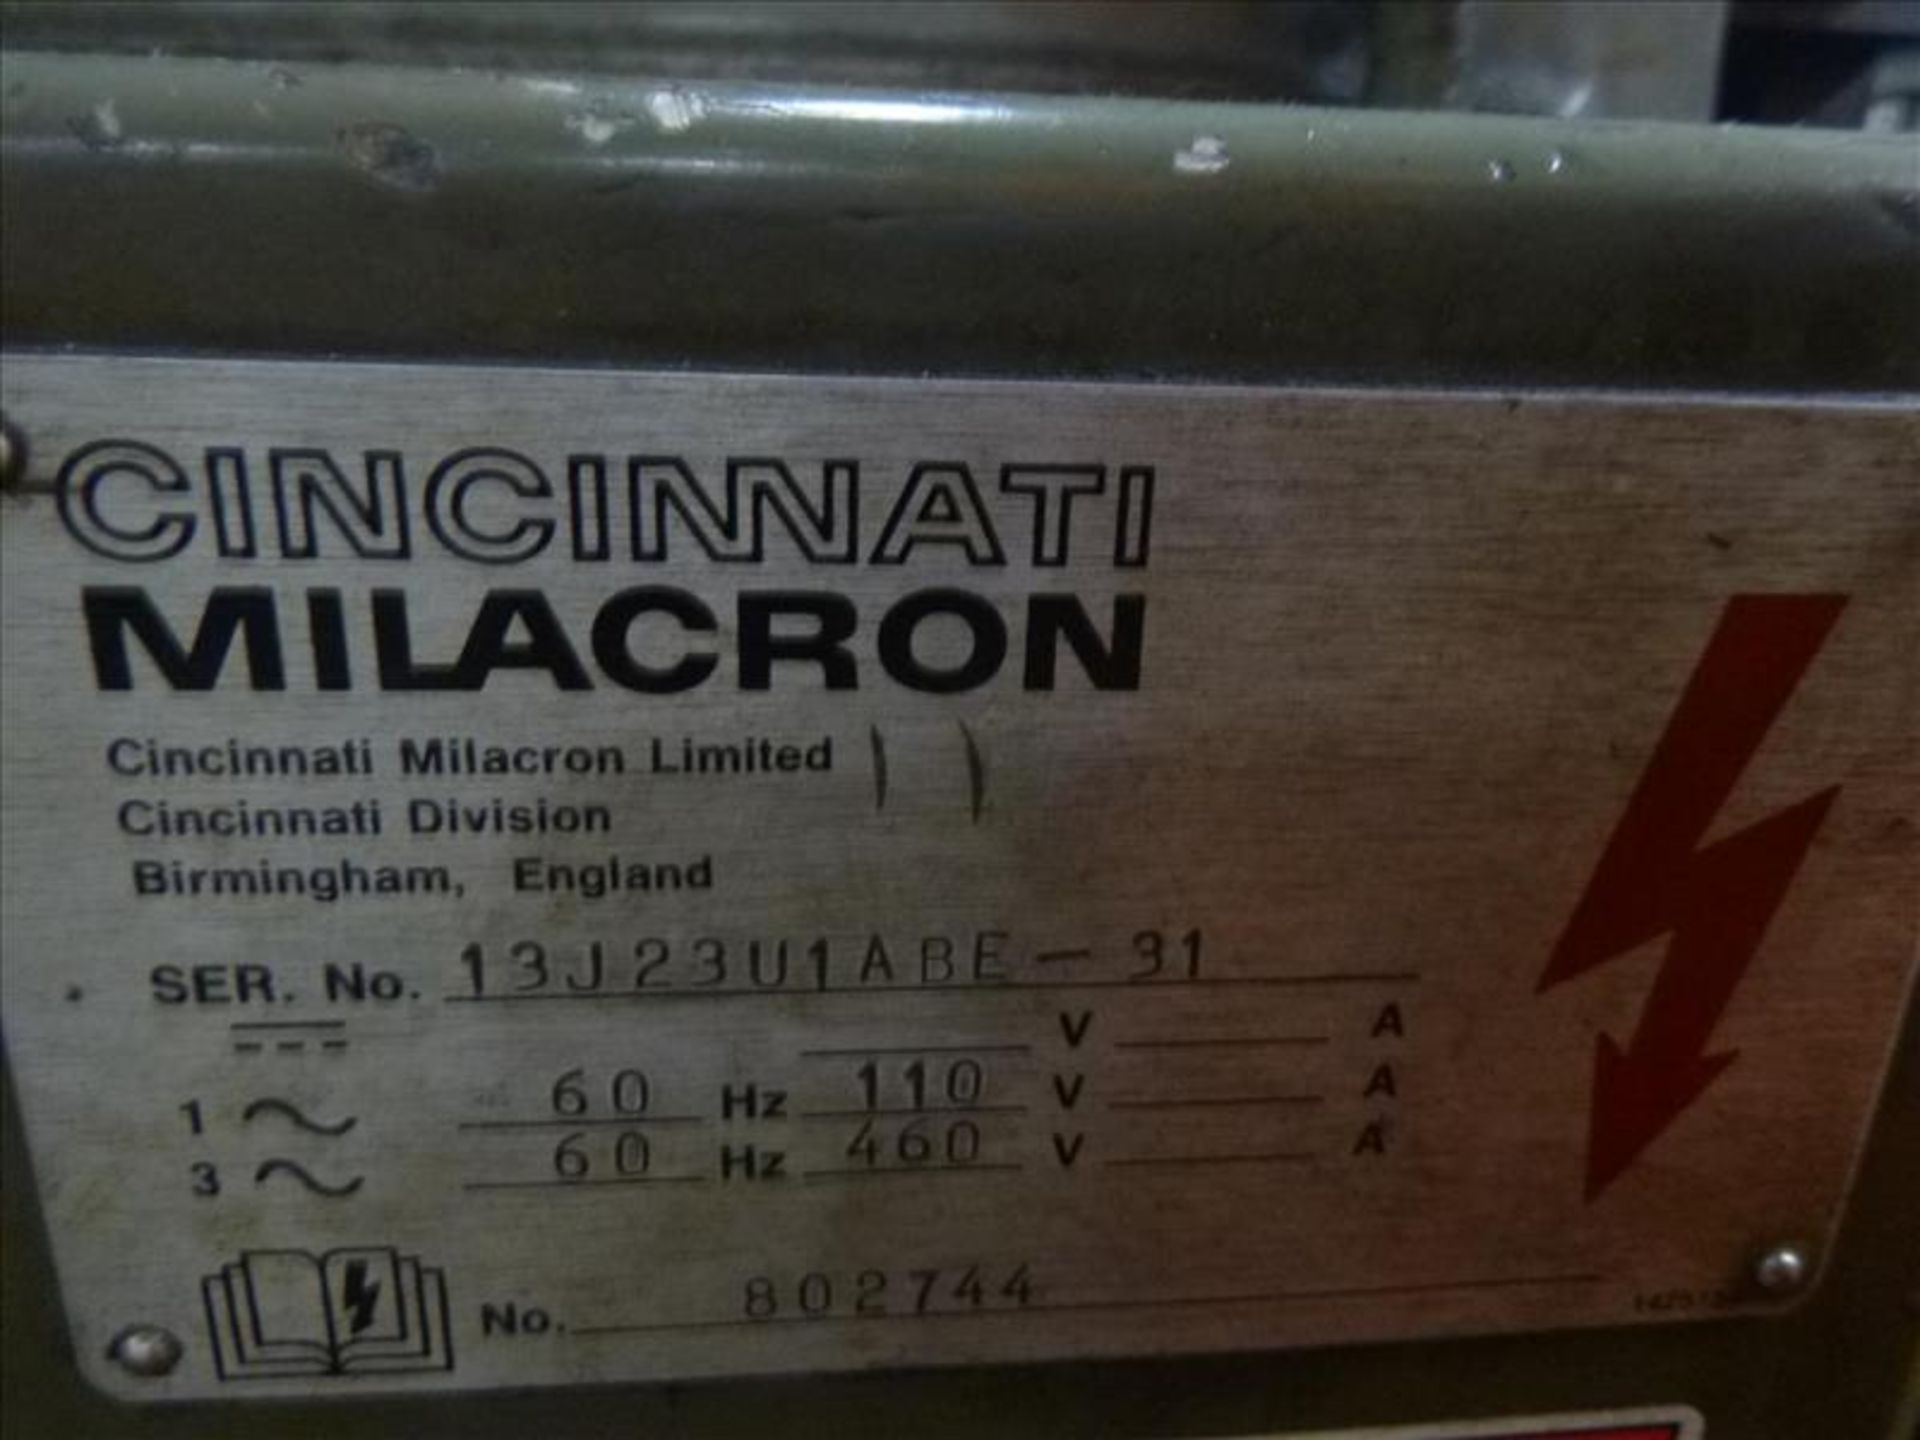 CINCINNATI MILACRON 2MK Universal Mill, s/n 13J23UIABE-31 - Image 6 of 8